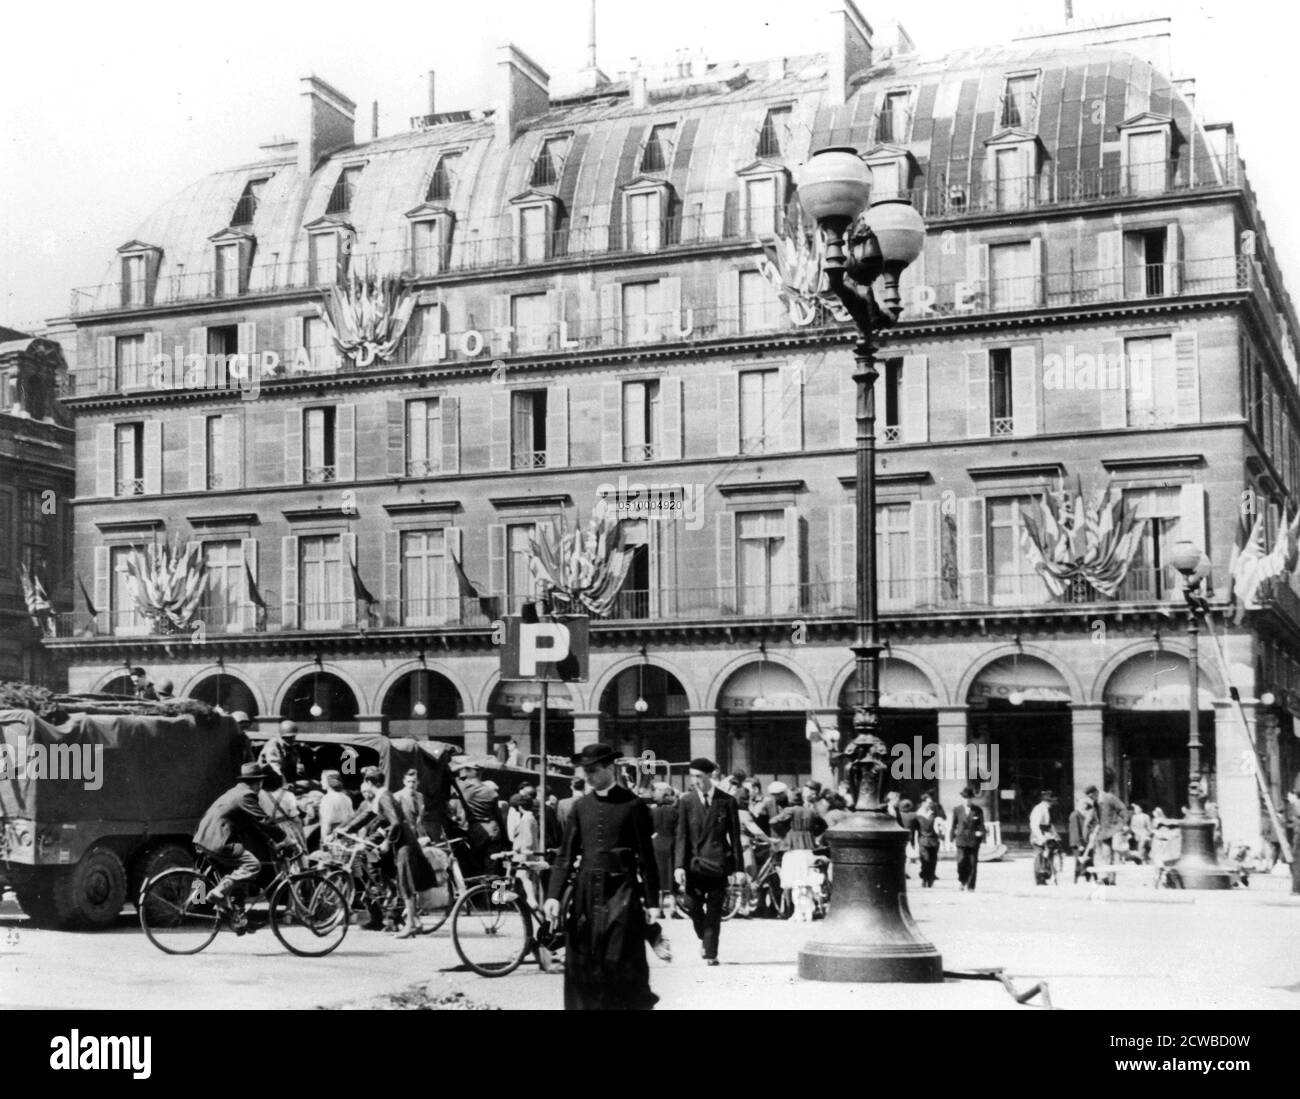 General Leclercs französische Truppen im Zentrum von Paris, August 1944. Leclercs 2. Panzerdivision waren die ersten alliierten Truppen, die Paris einmarschierten und die Stadt von der Nazi-Besetzung im August 1944 befreiten. Der Fotograf ist unbekannt. Stockfoto